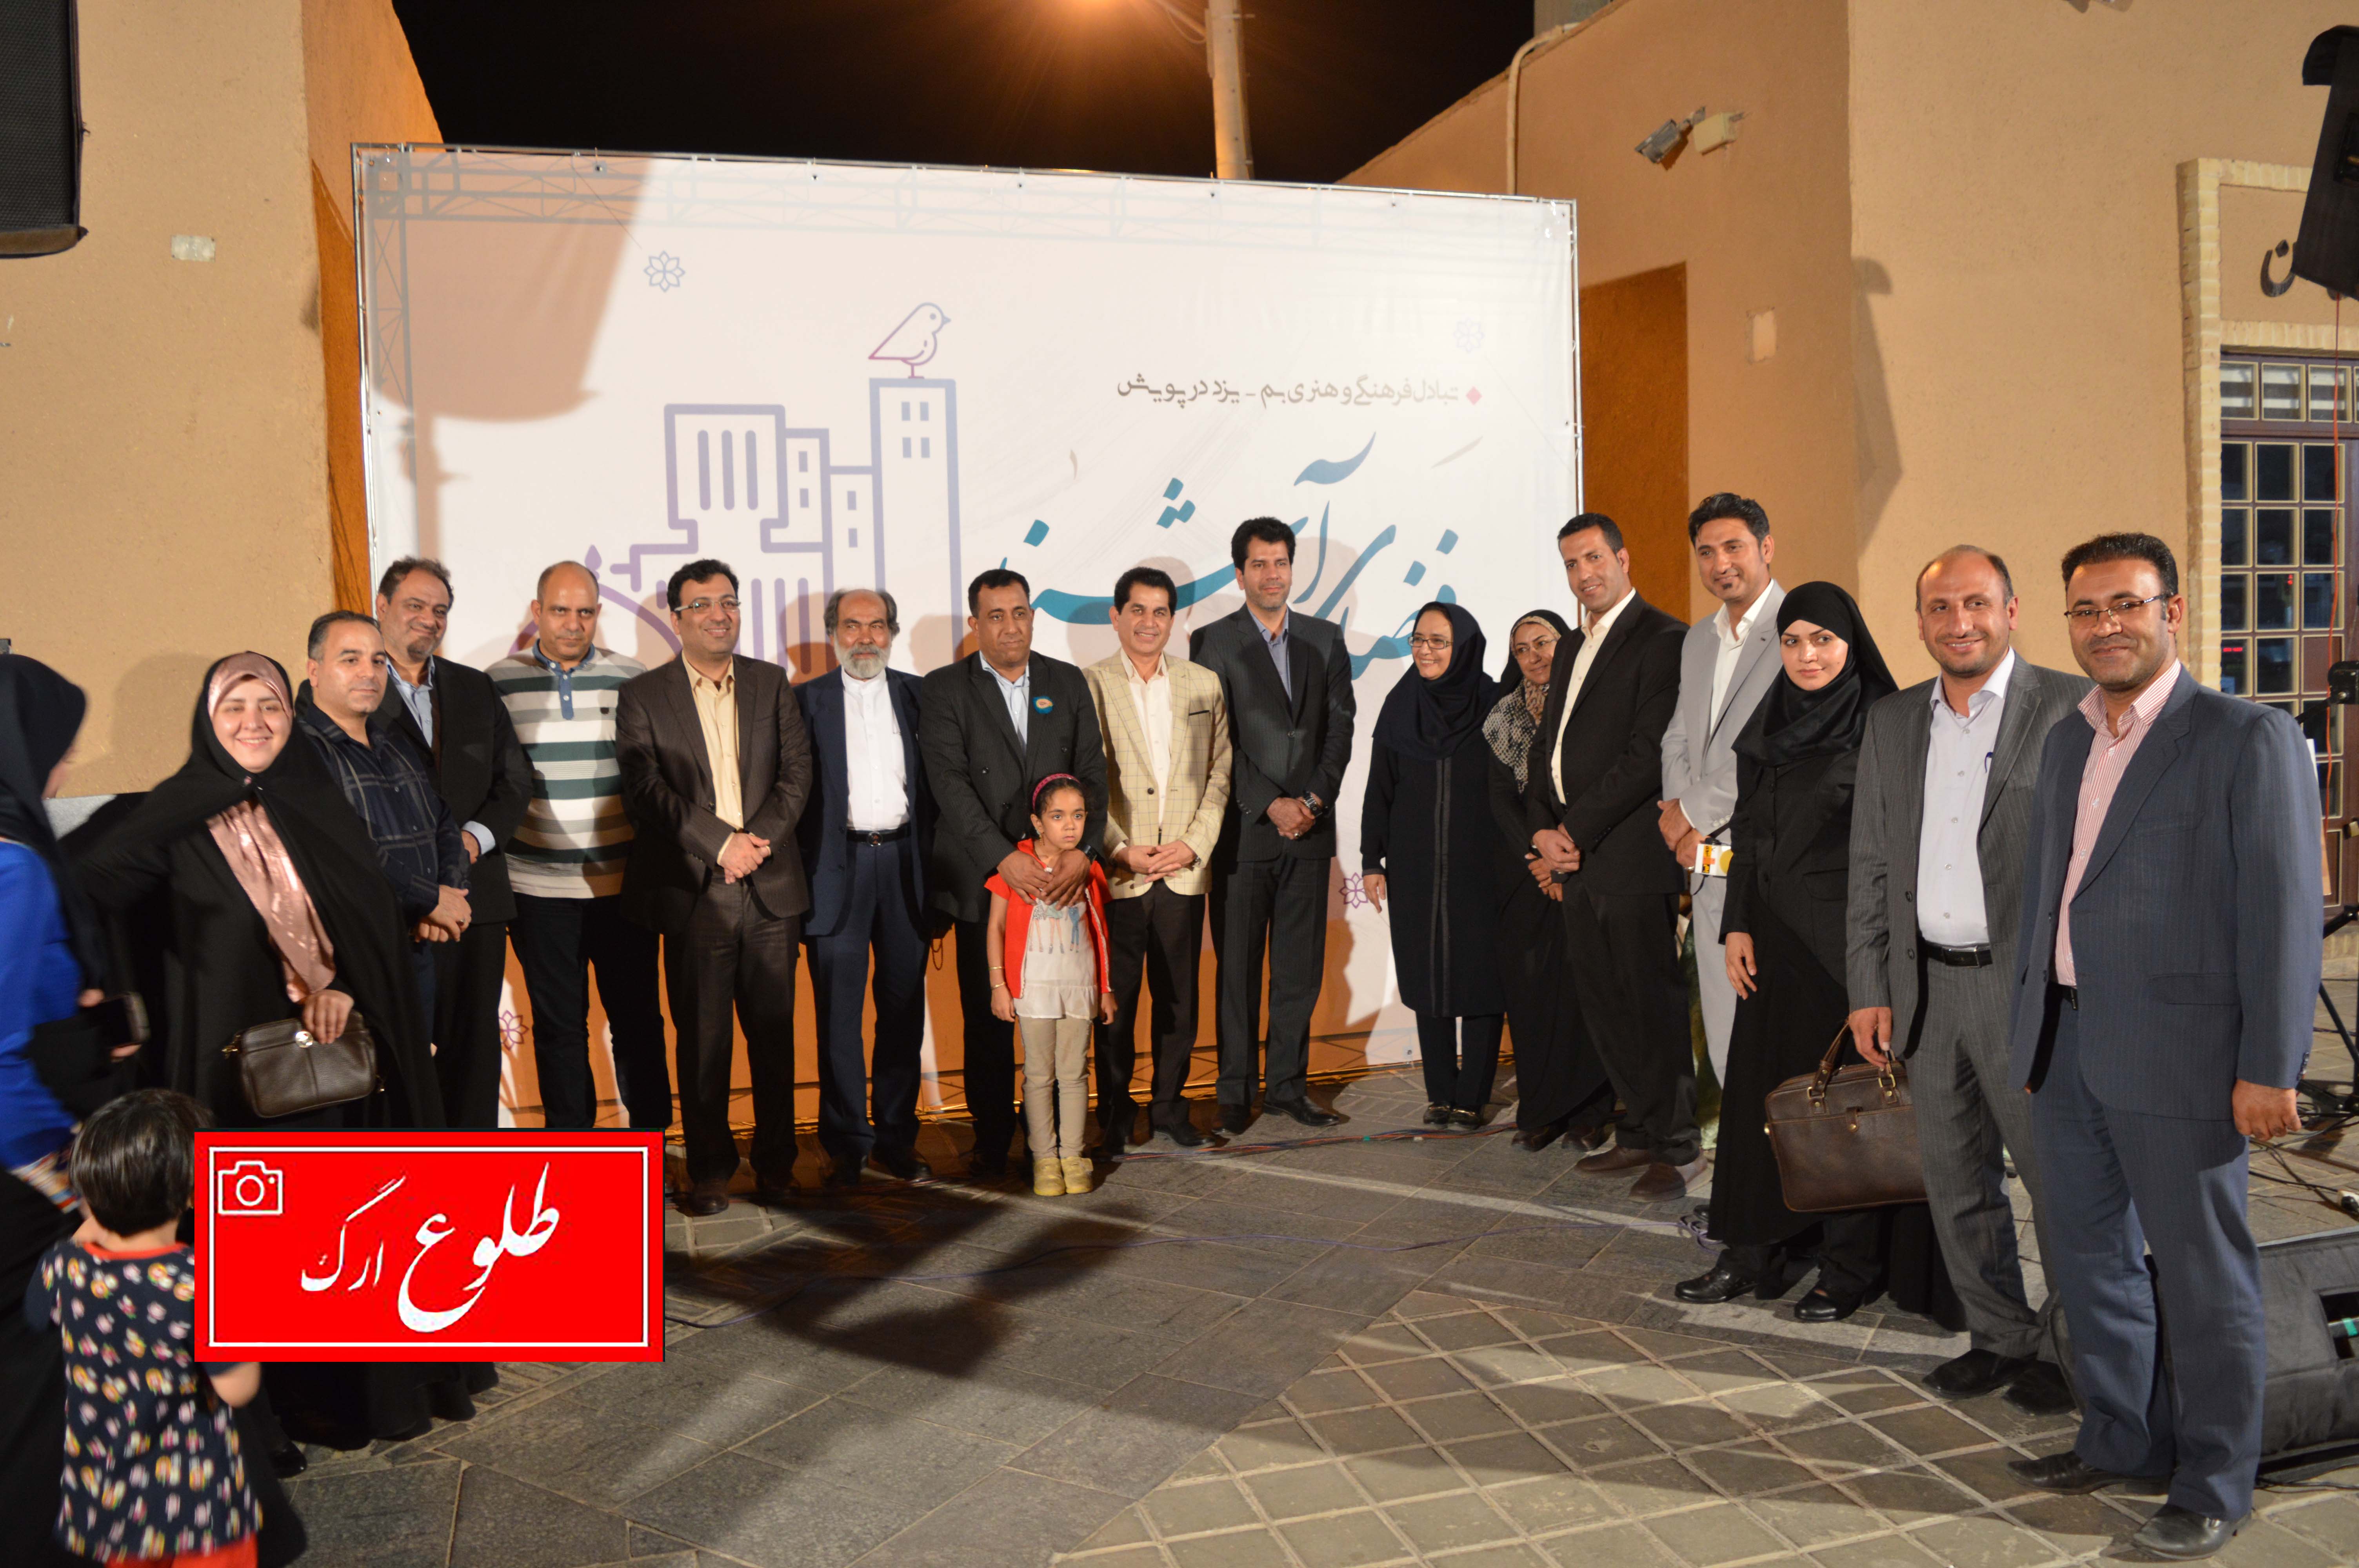 گزارش تصویری از سفر اعضای شورای شهر بم به یزد و نشست فضای آشنا